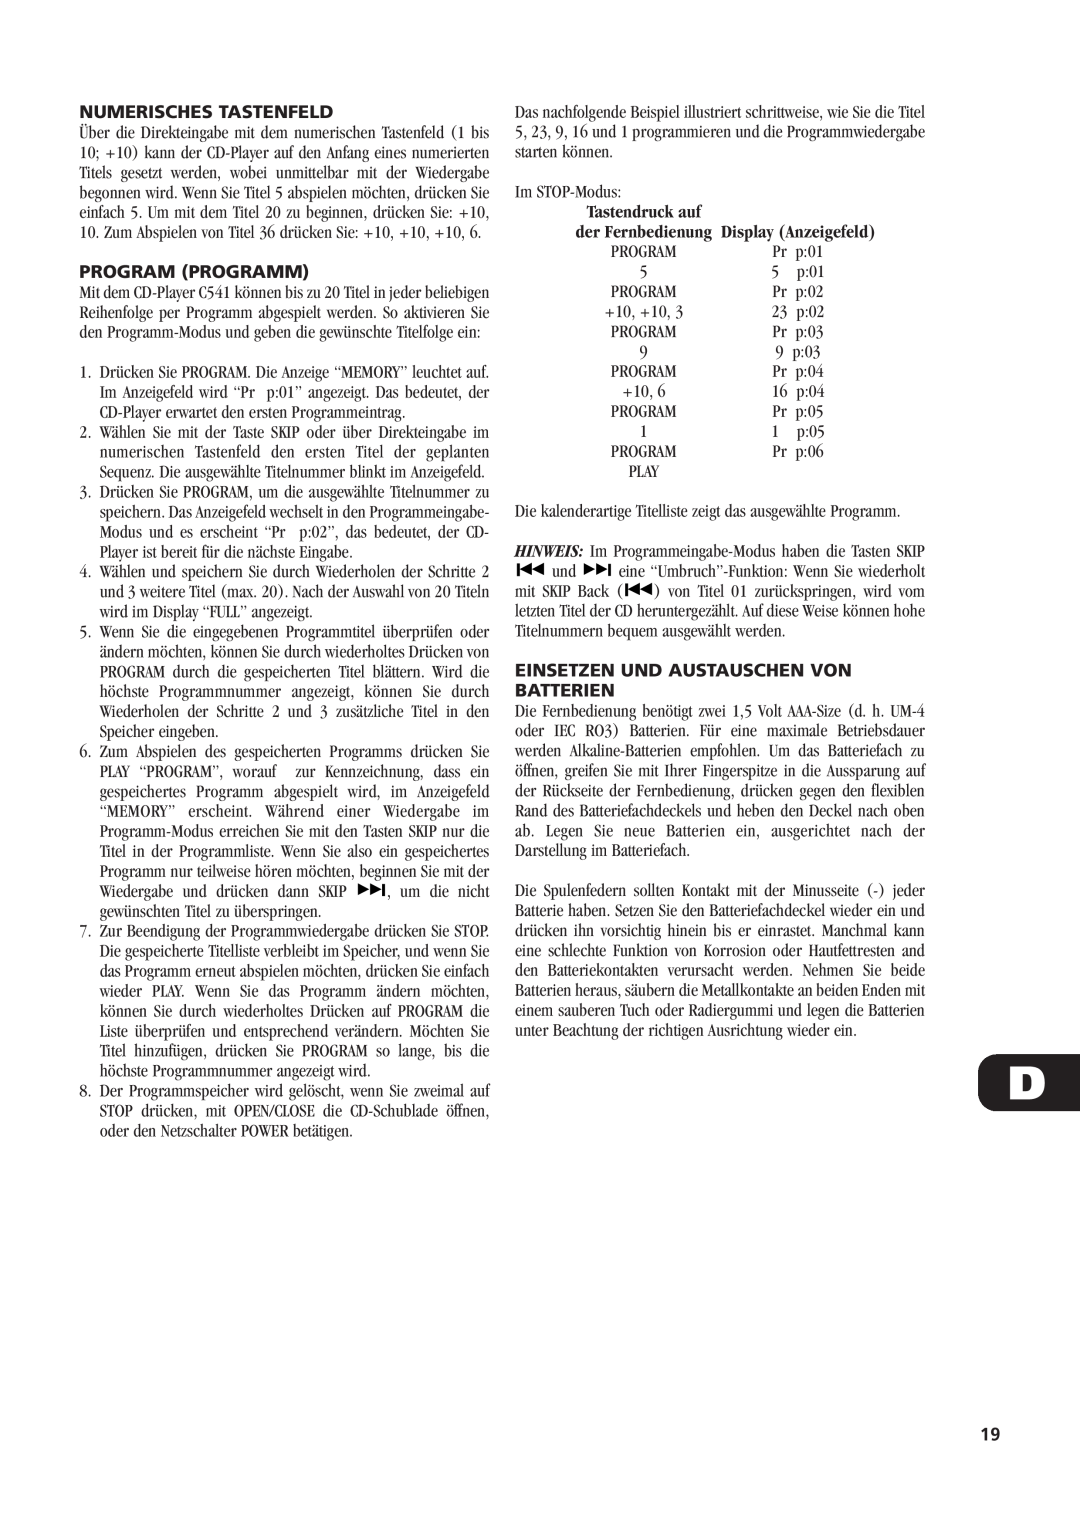 NAD C541 owner manual Numerisches Tastenfeld, Program Programm, Einsetzen Und Austauschen Von Batterien 